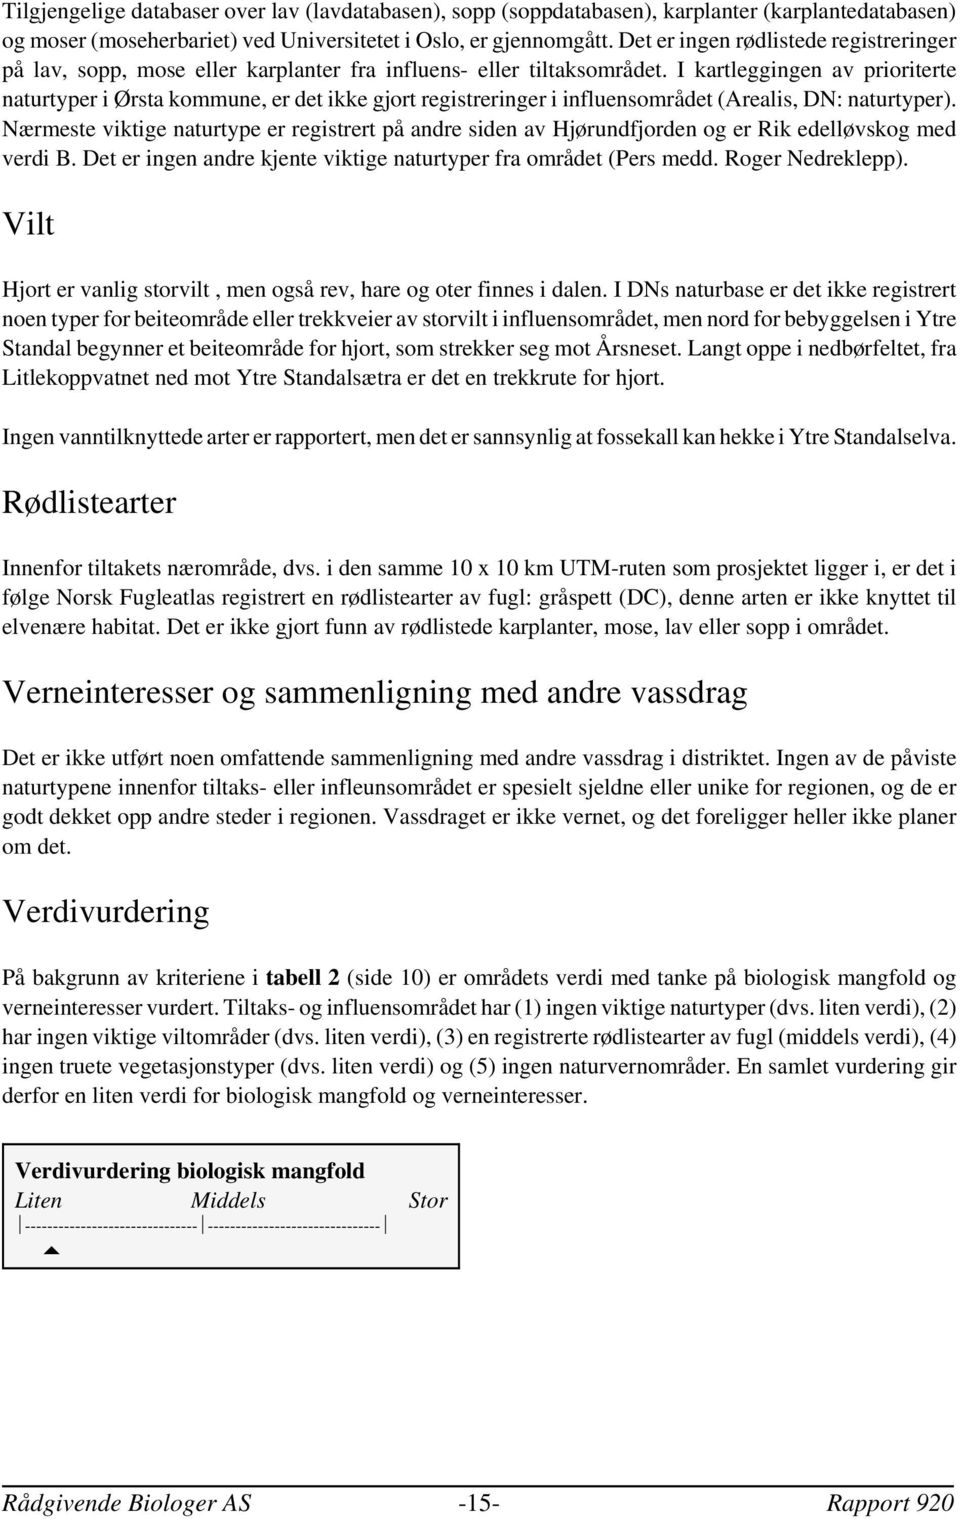 I kartleggingen av prioriterte naturtyper i Ørsta kommune, er det ikke gjort registreringer i influensområdet (Arealis, DN: naturtyper).